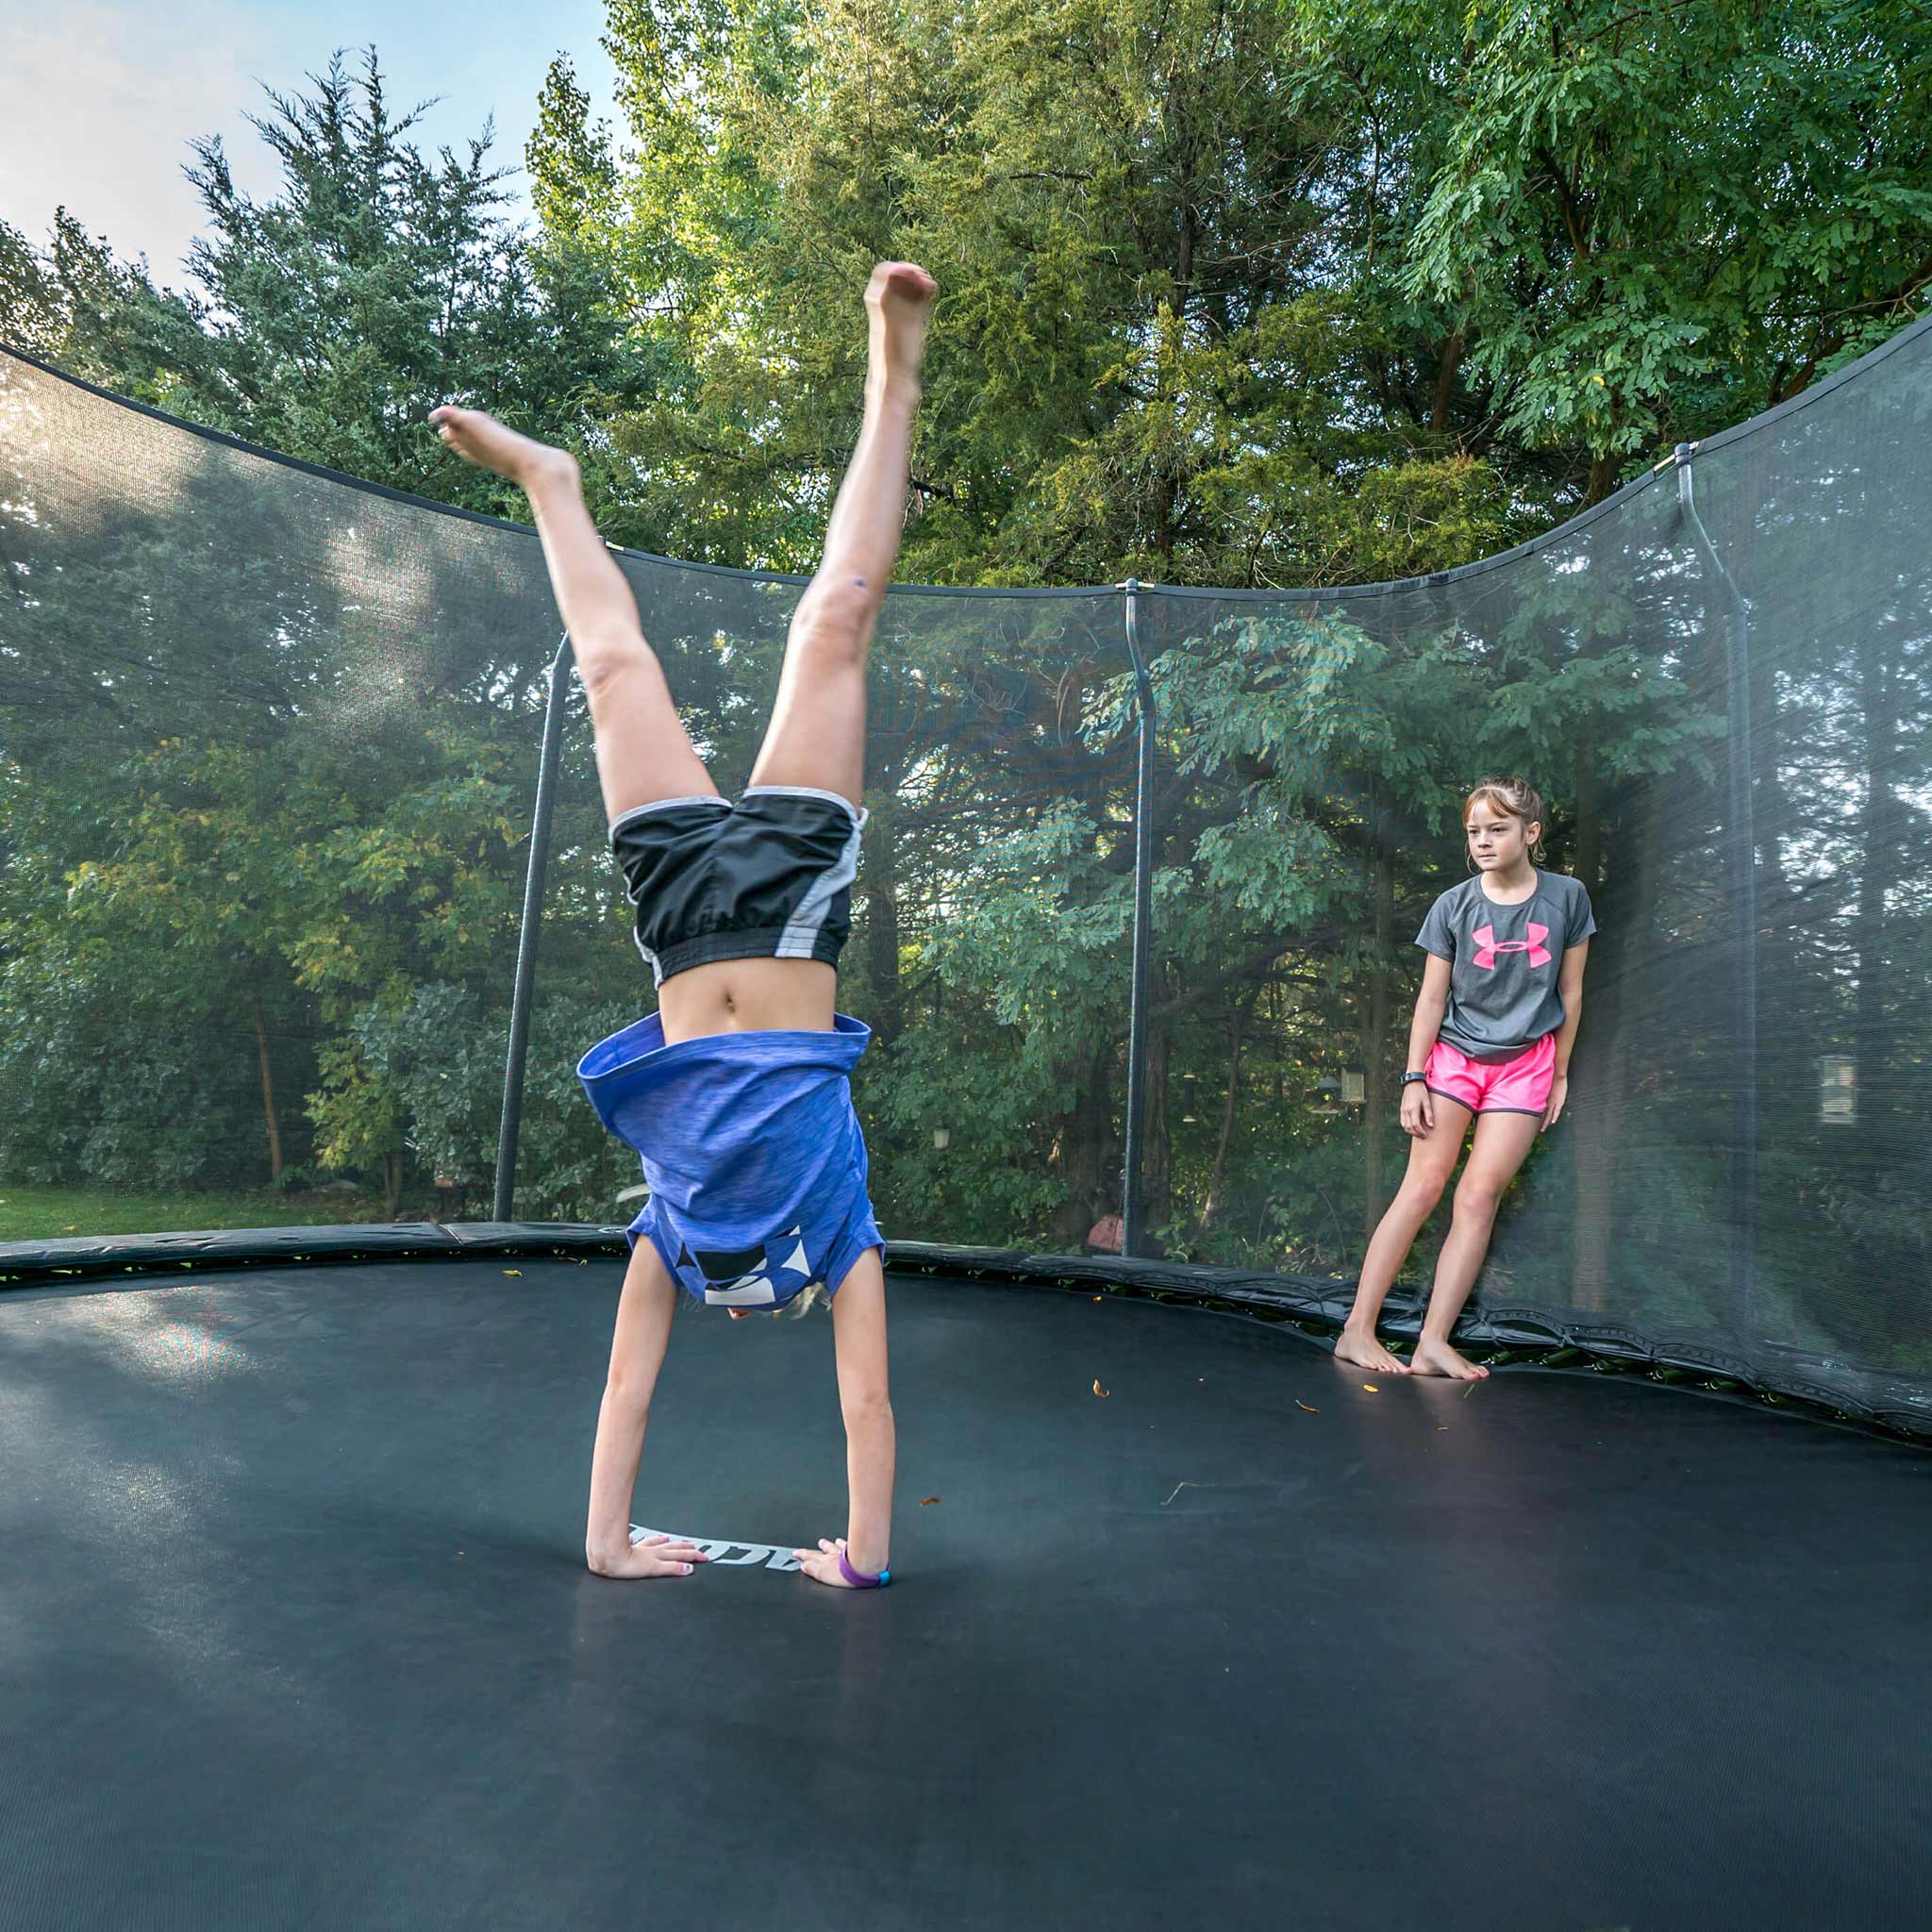 Tyttö seisoo käsillä Acon-trampoliinilla, ystävä katselee.